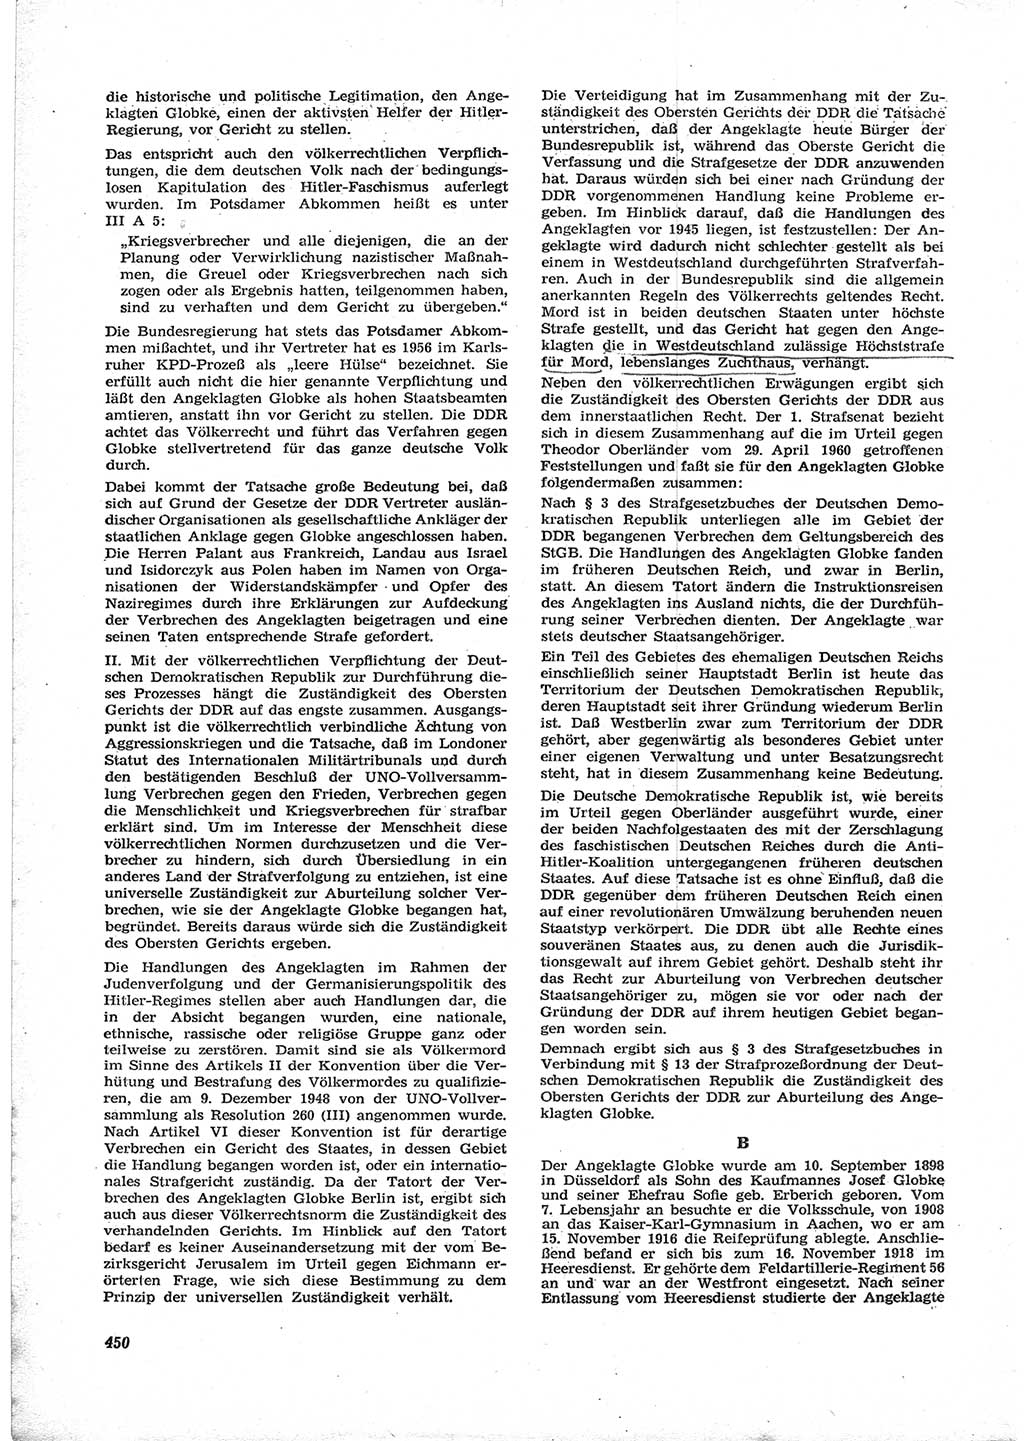 Neue Justiz (NJ), Zeitschrift für Recht und Rechtswissenschaft [Deutsche Demokratische Republik (DDR)], 17. Jahrgang 1963, Seite 450 (NJ DDR 1963, S. 450)